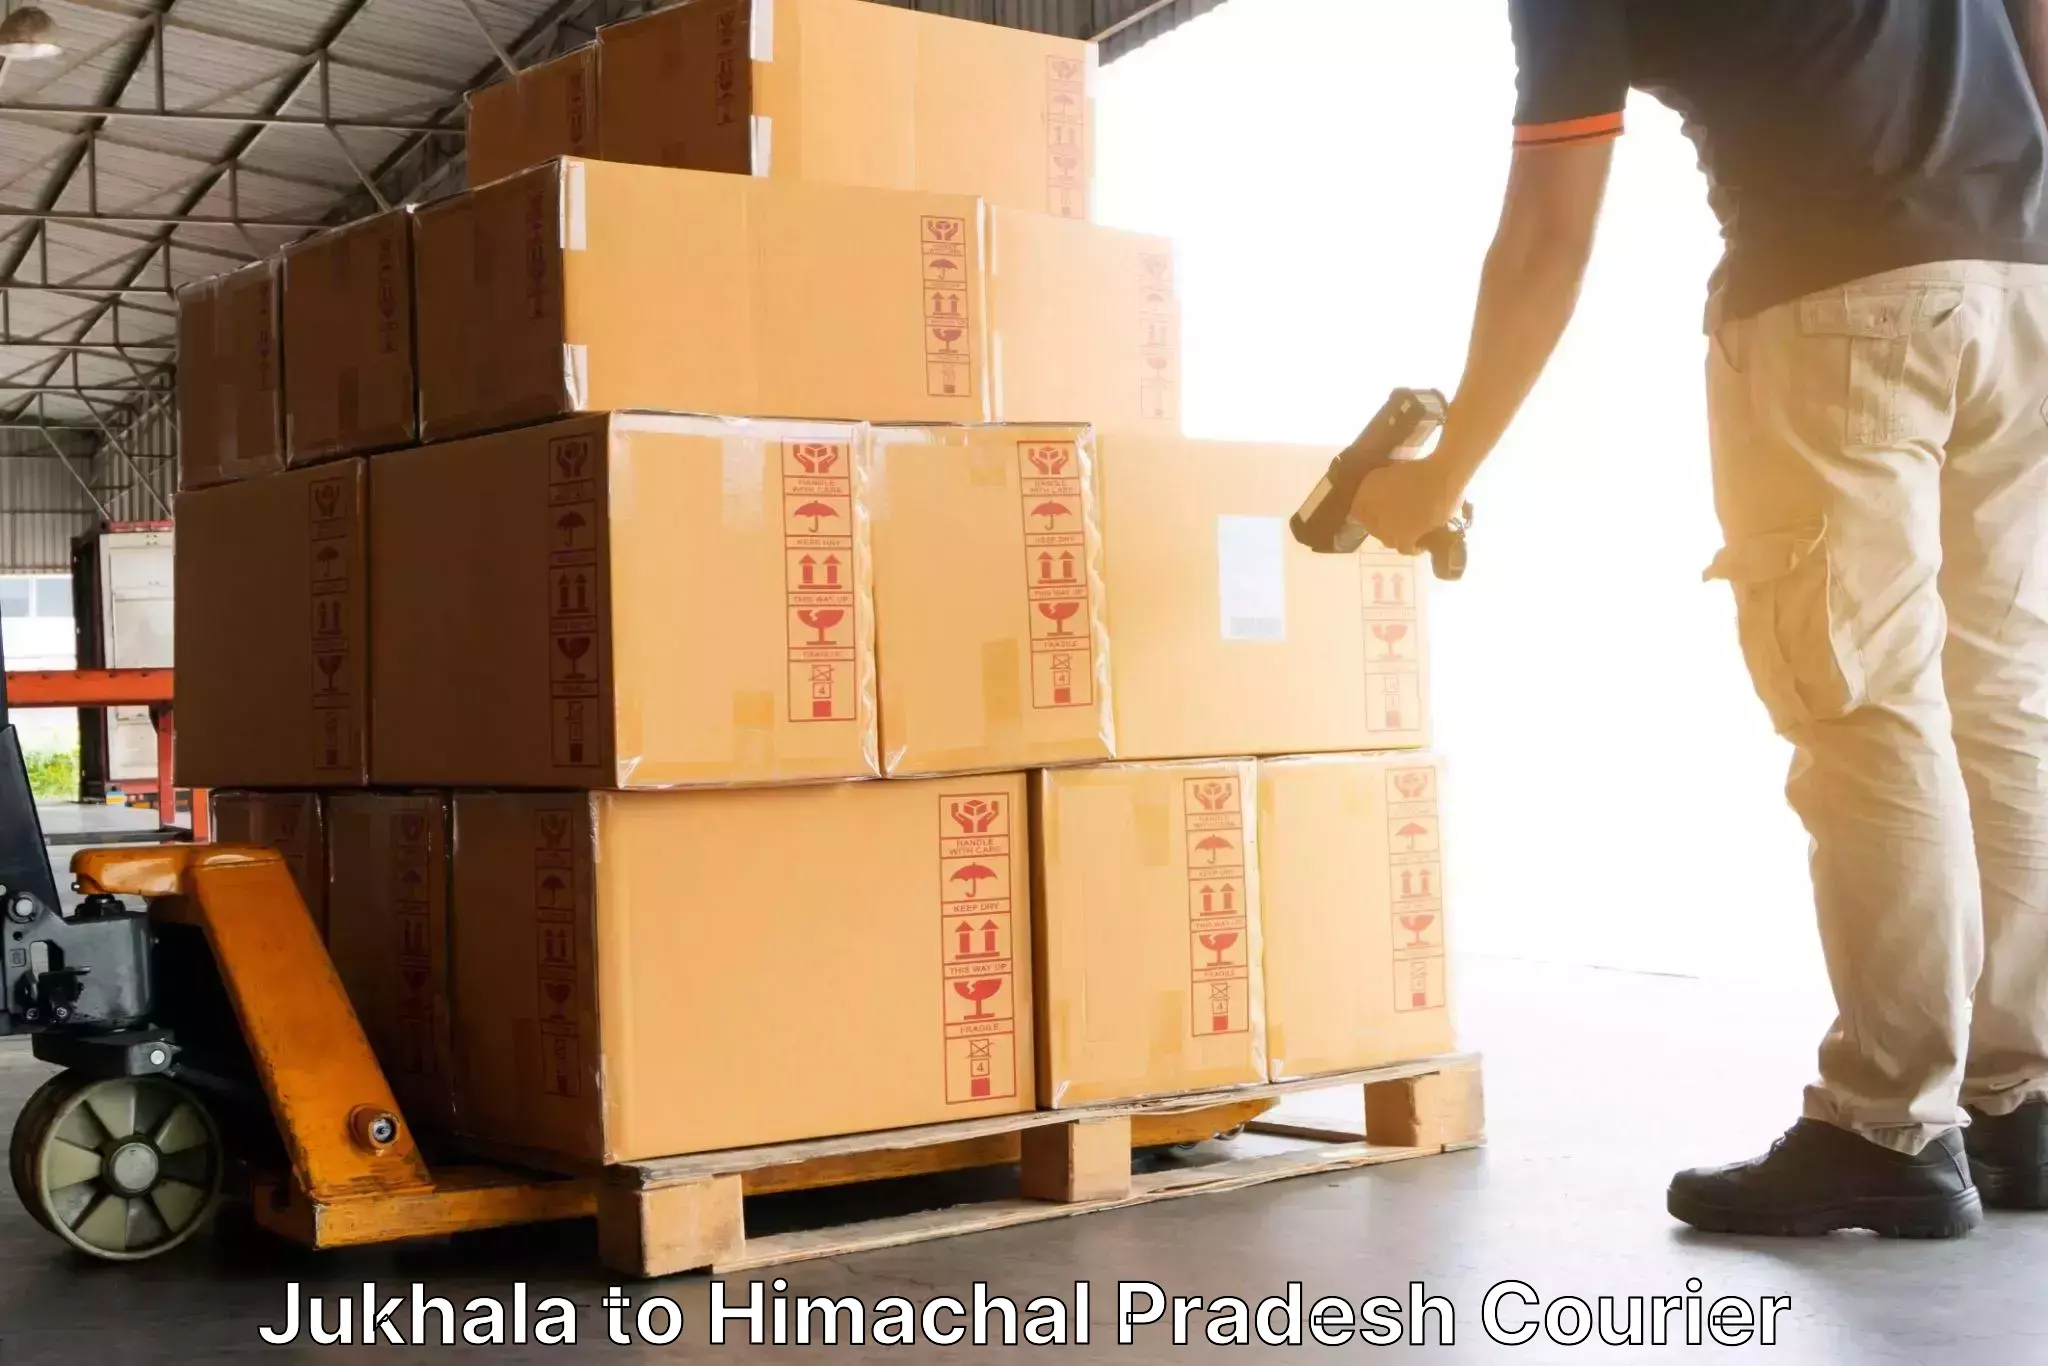 Comprehensive parcel tracking in Jukhala to Sundla